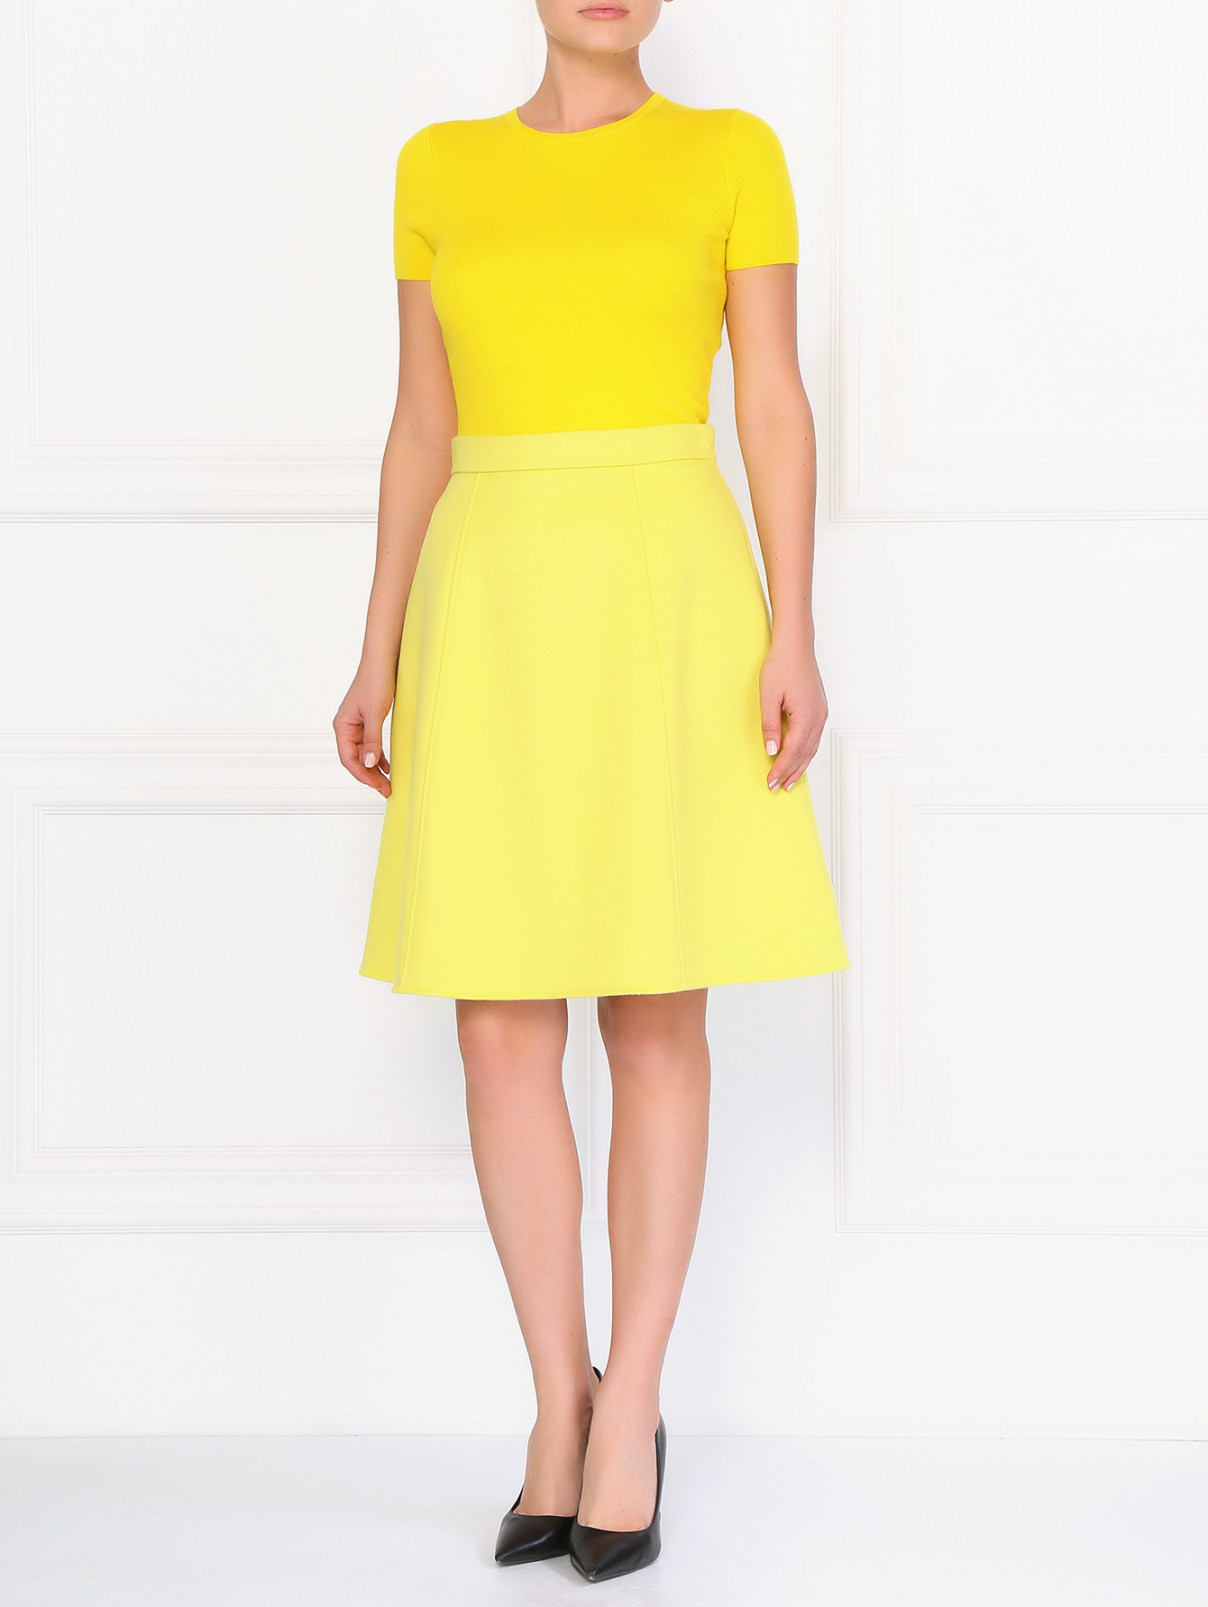 Шерстяная юбка-мини Ermanno Scervino  –  Модель Общий вид  – Цвет:  Желтый